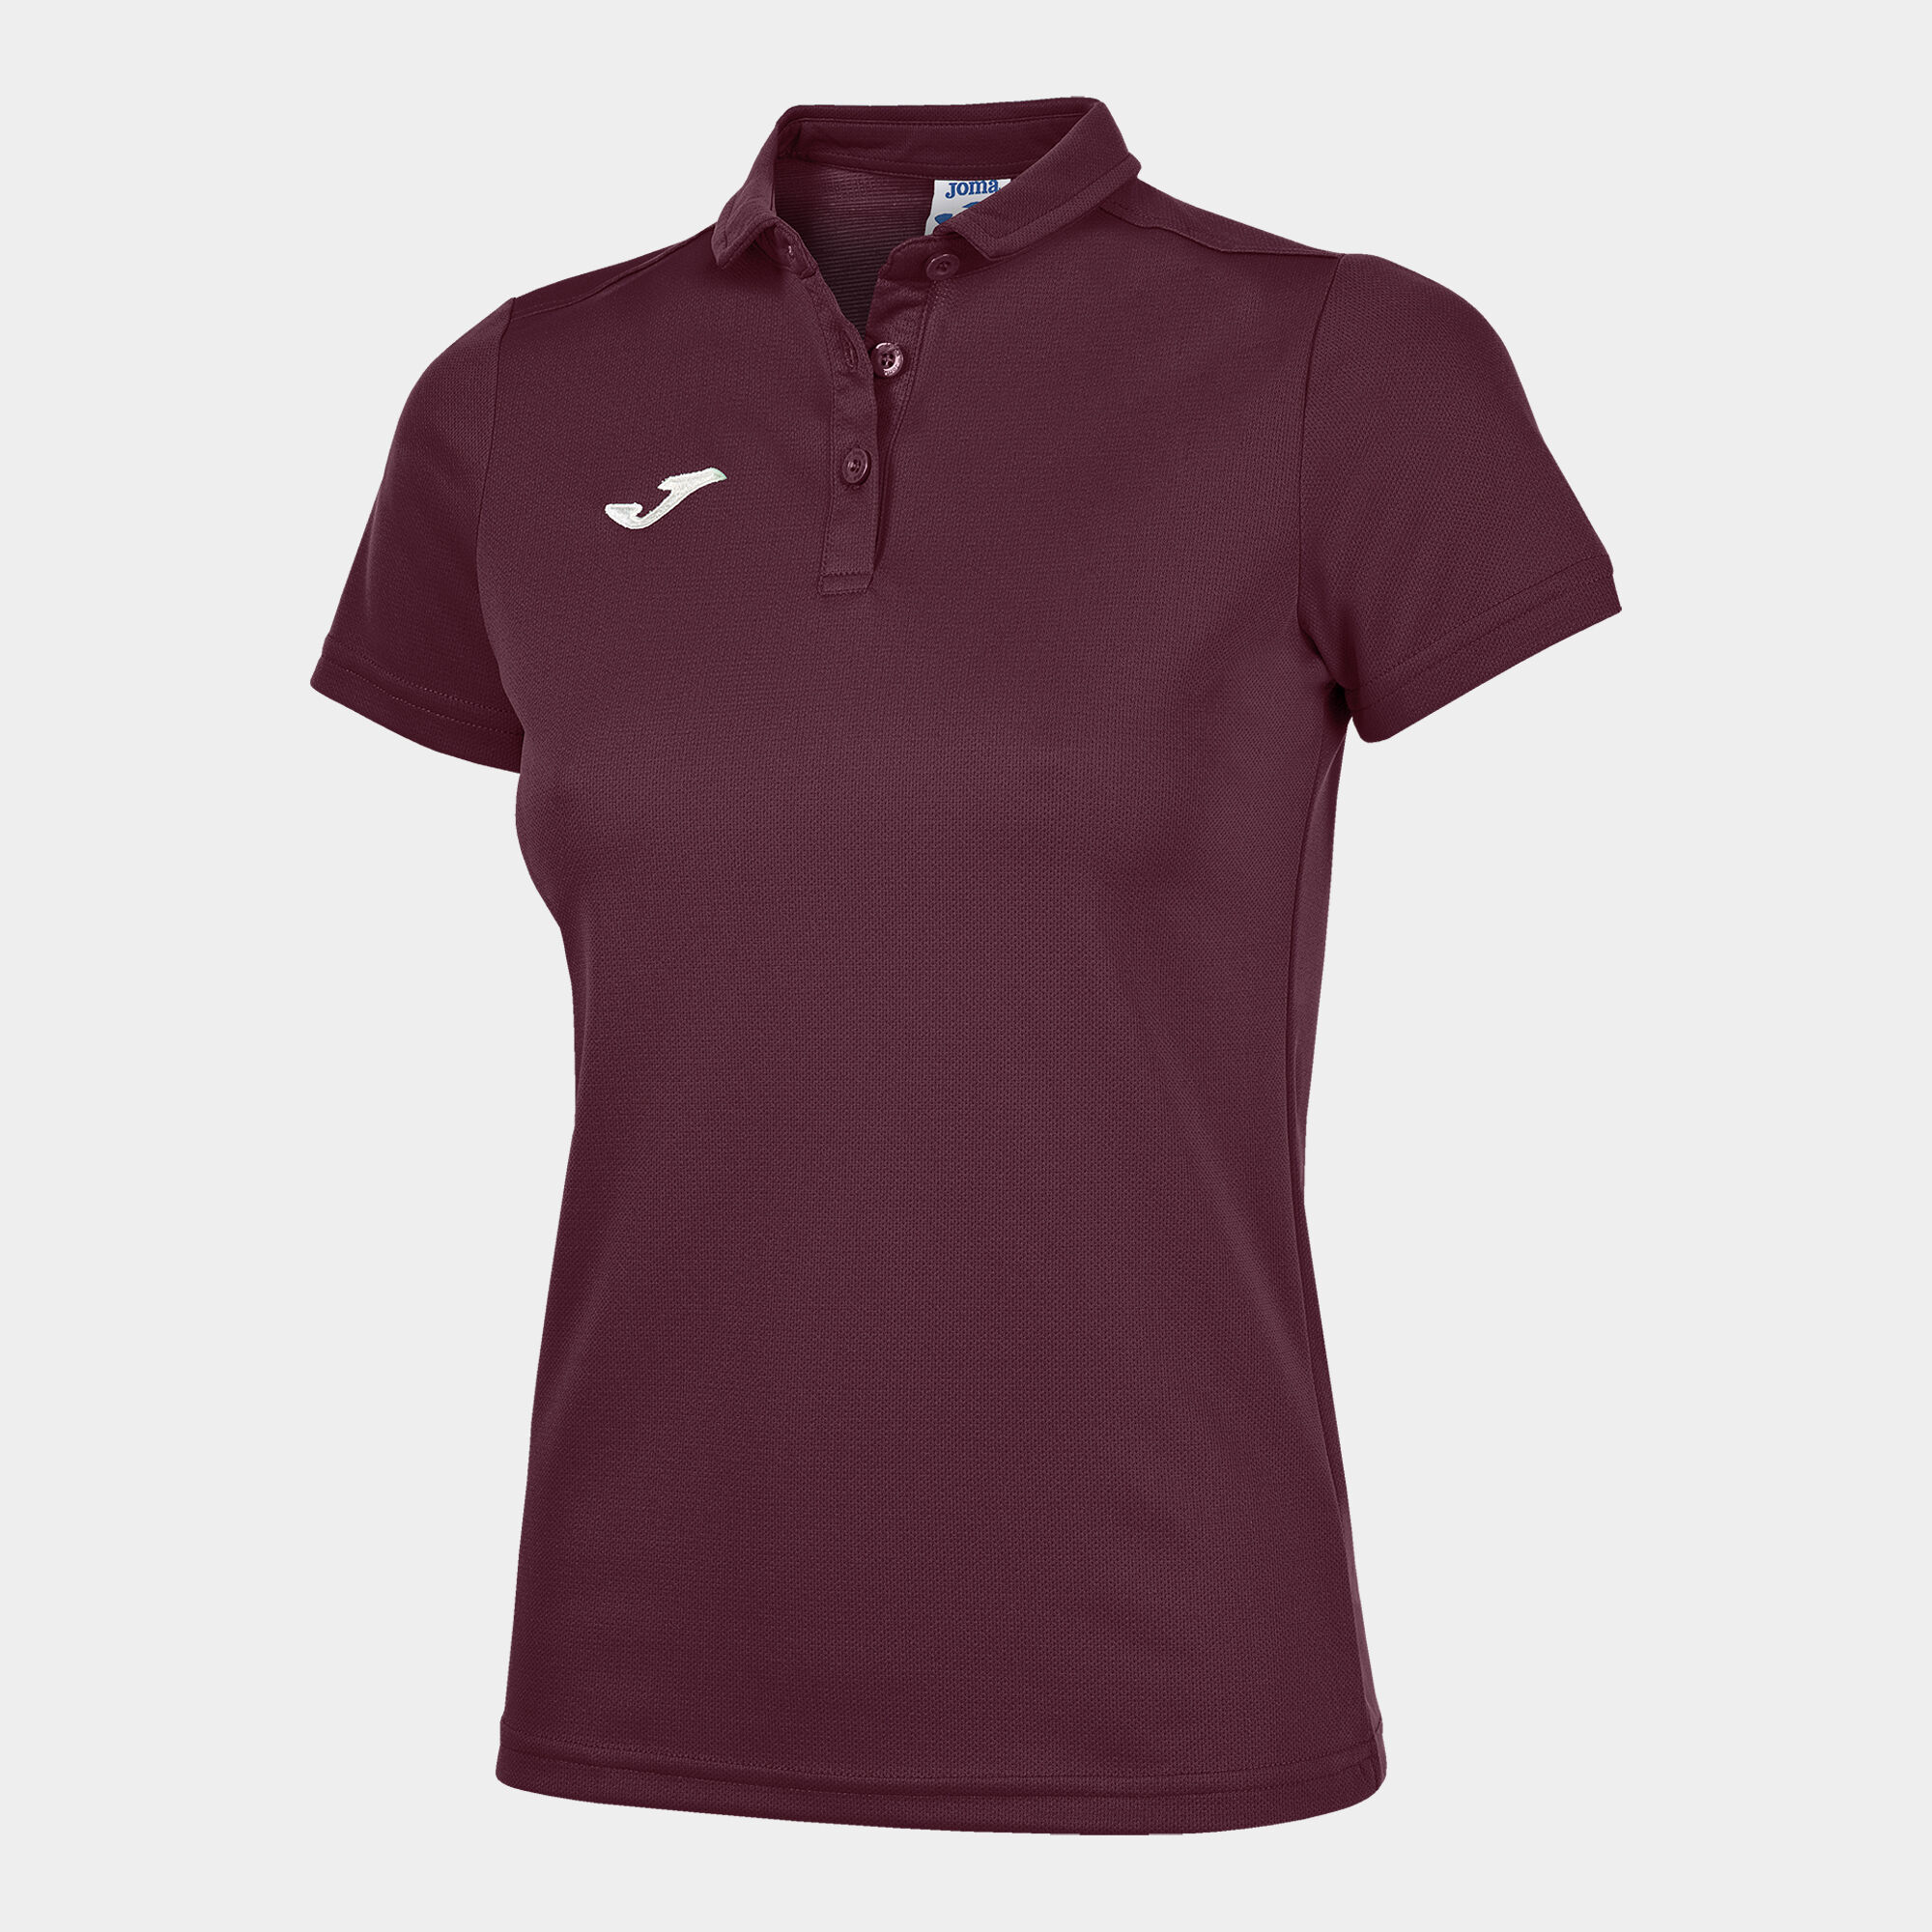 Polo shirt short-sleeve woman Hobby burgundy